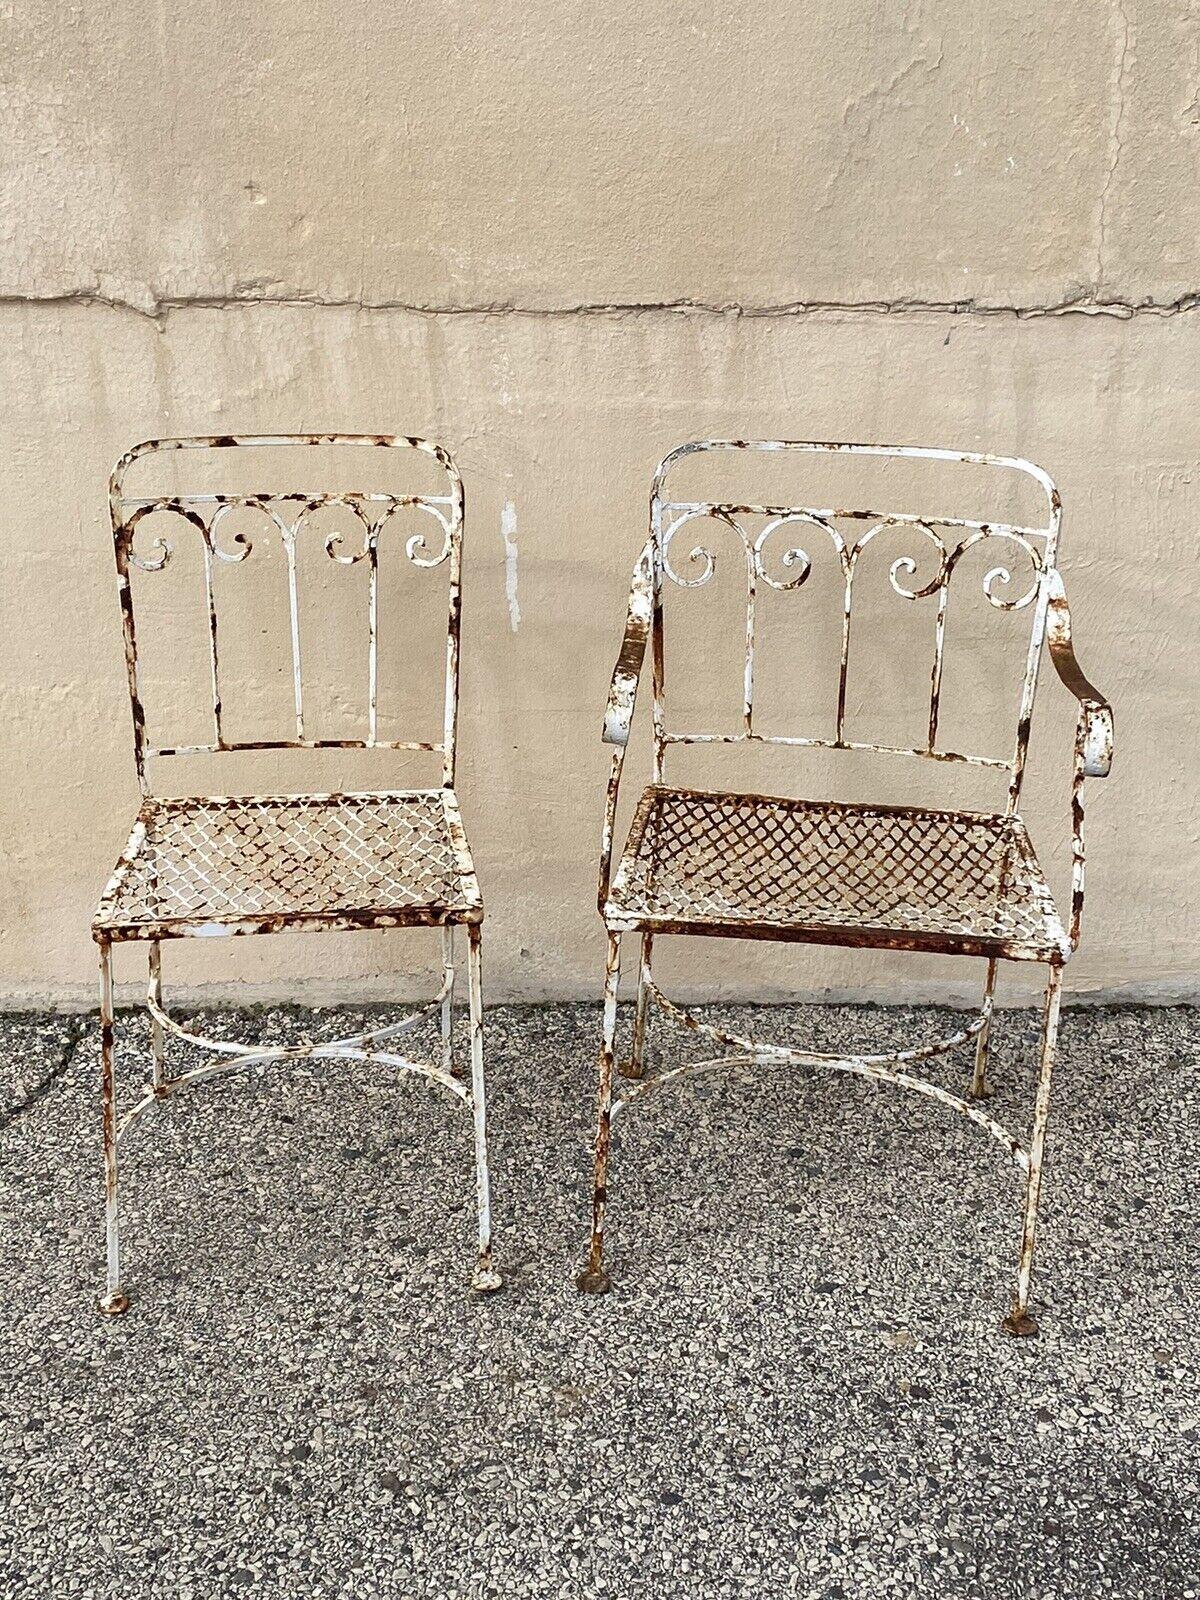 Anciennes chaises de salle à manger de jardin en fer forgé à volutes Art Nouveau - une paire. Circa Early to Mid 20th Century.
Mesures : 
Fauteuil : 31